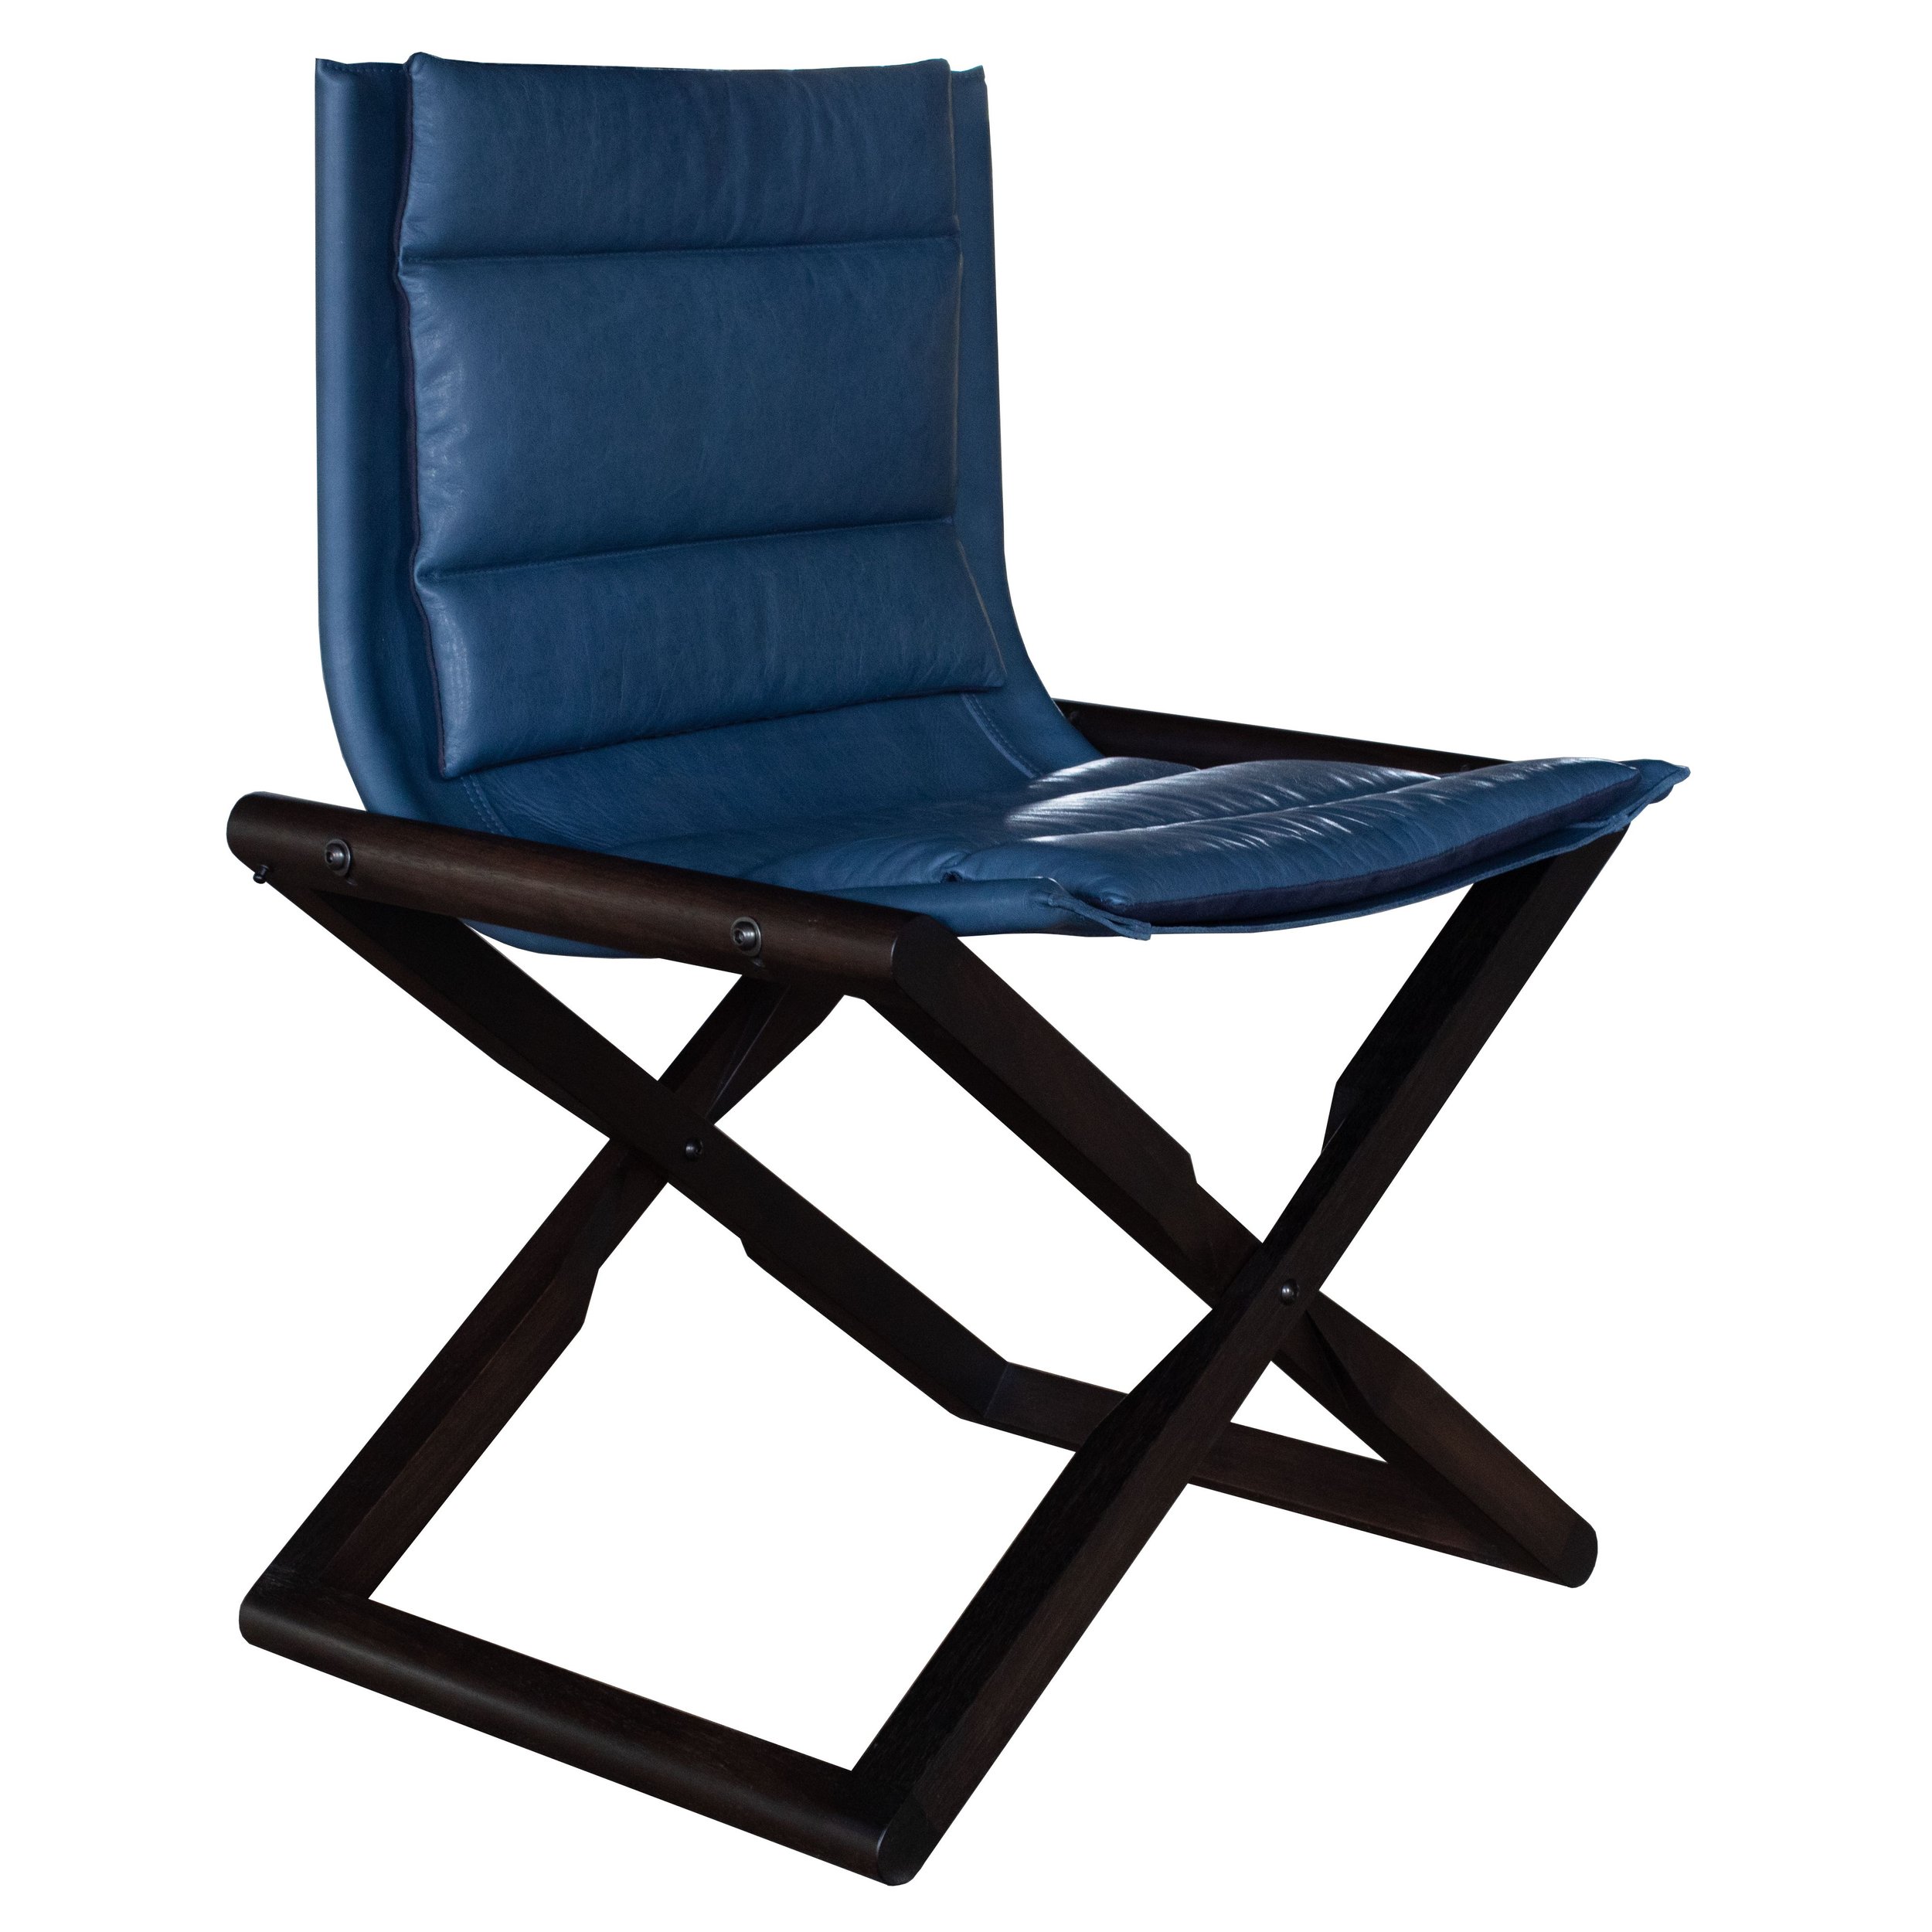 Moss Folding Chair